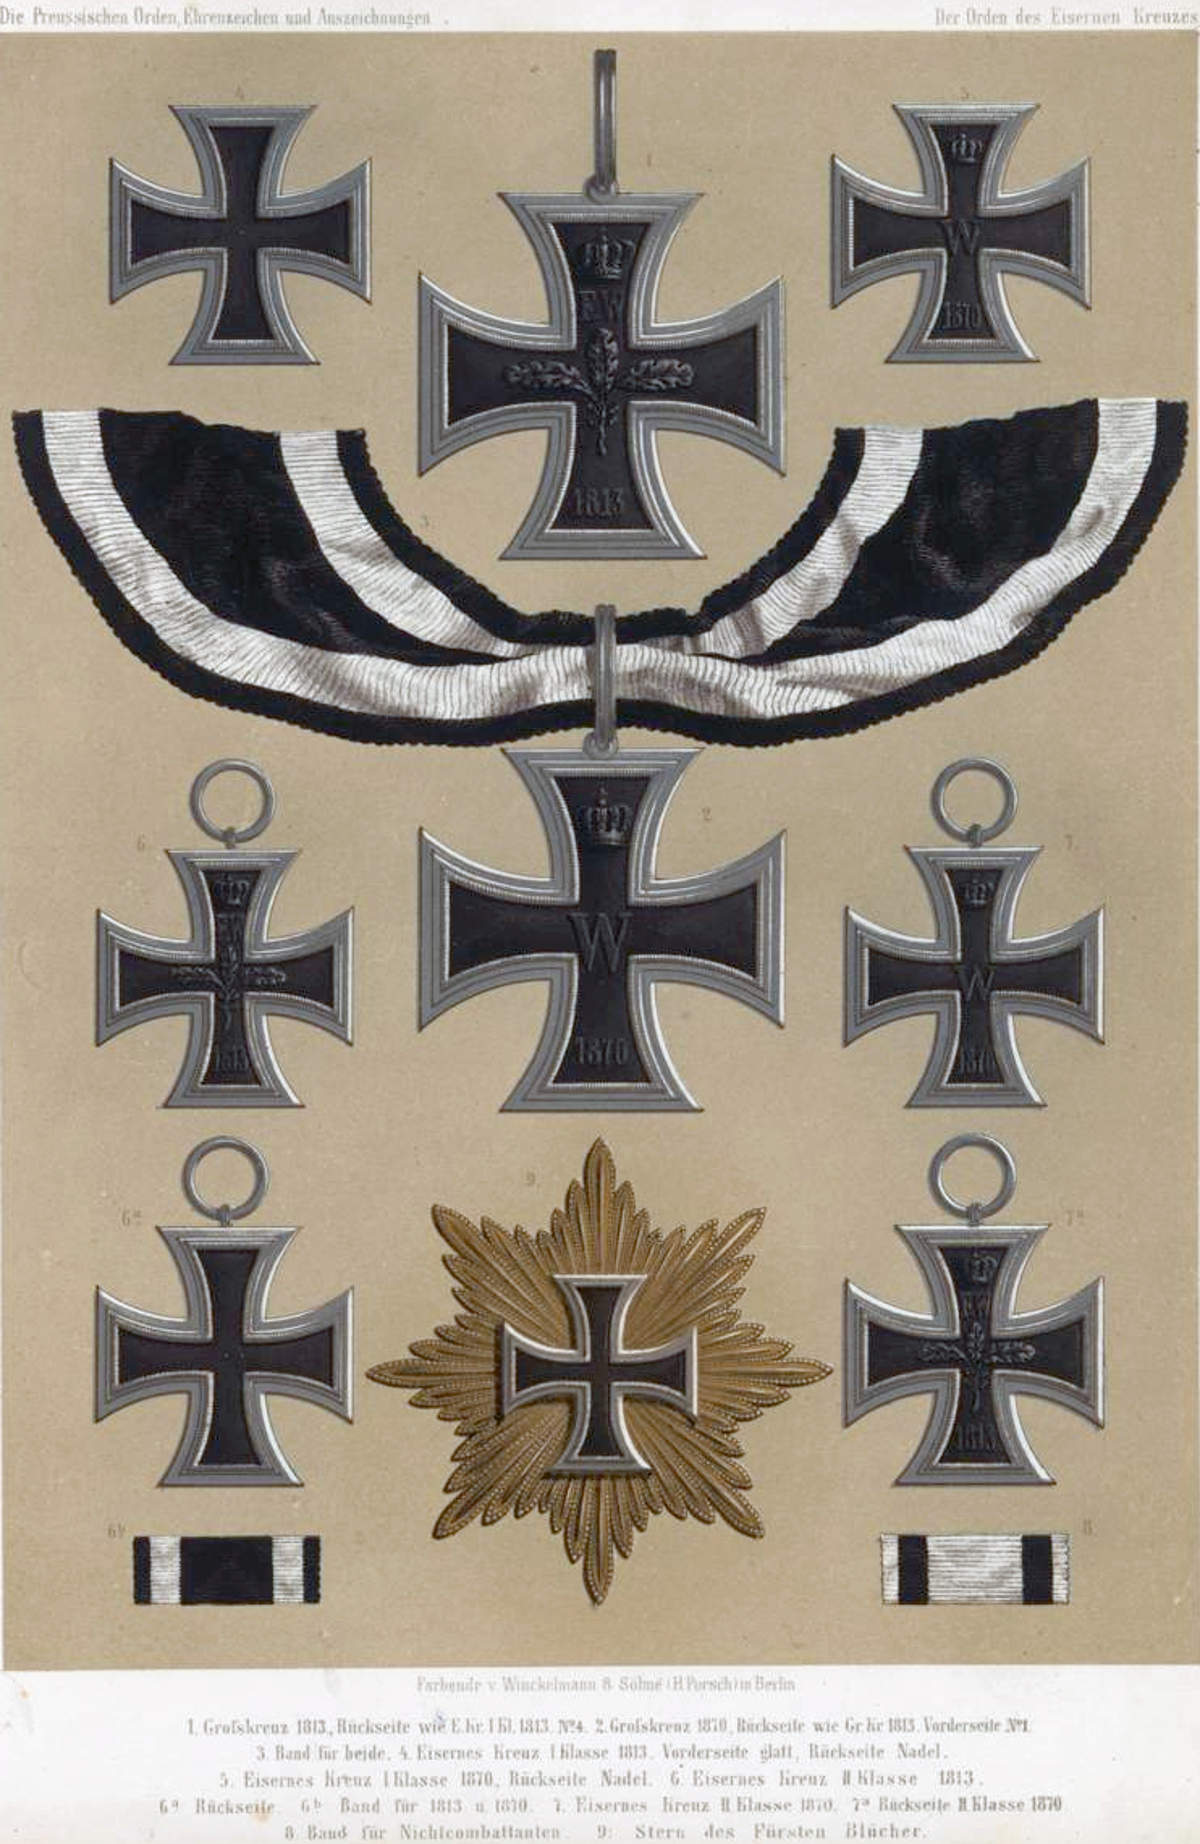 Formen des Eiserne Kreuzes von 1813 bis 1870